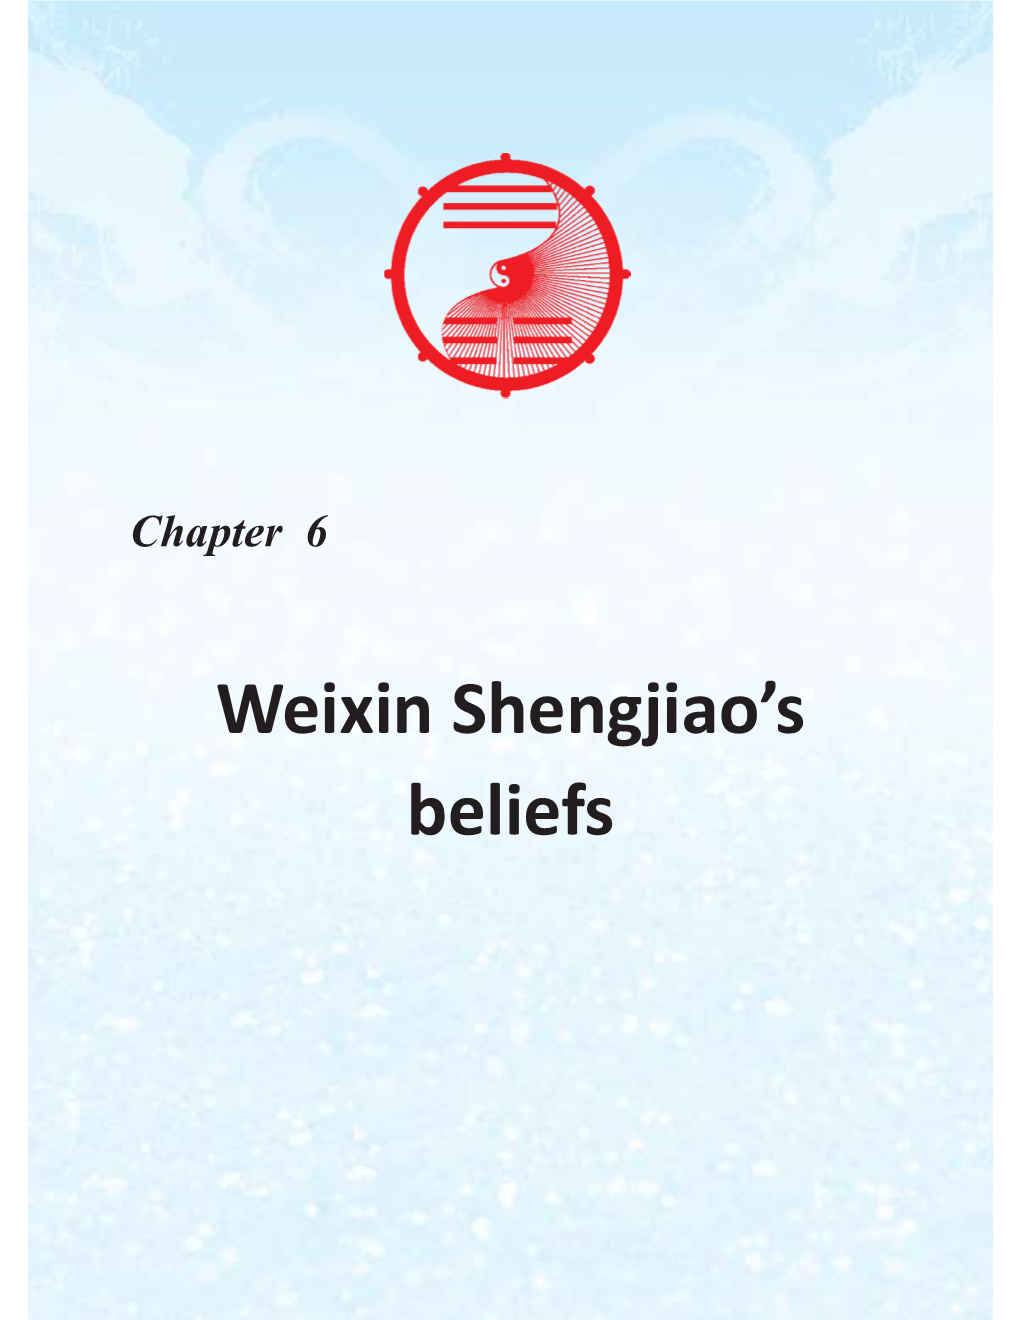 Weixin Shengjiao's Beliefs